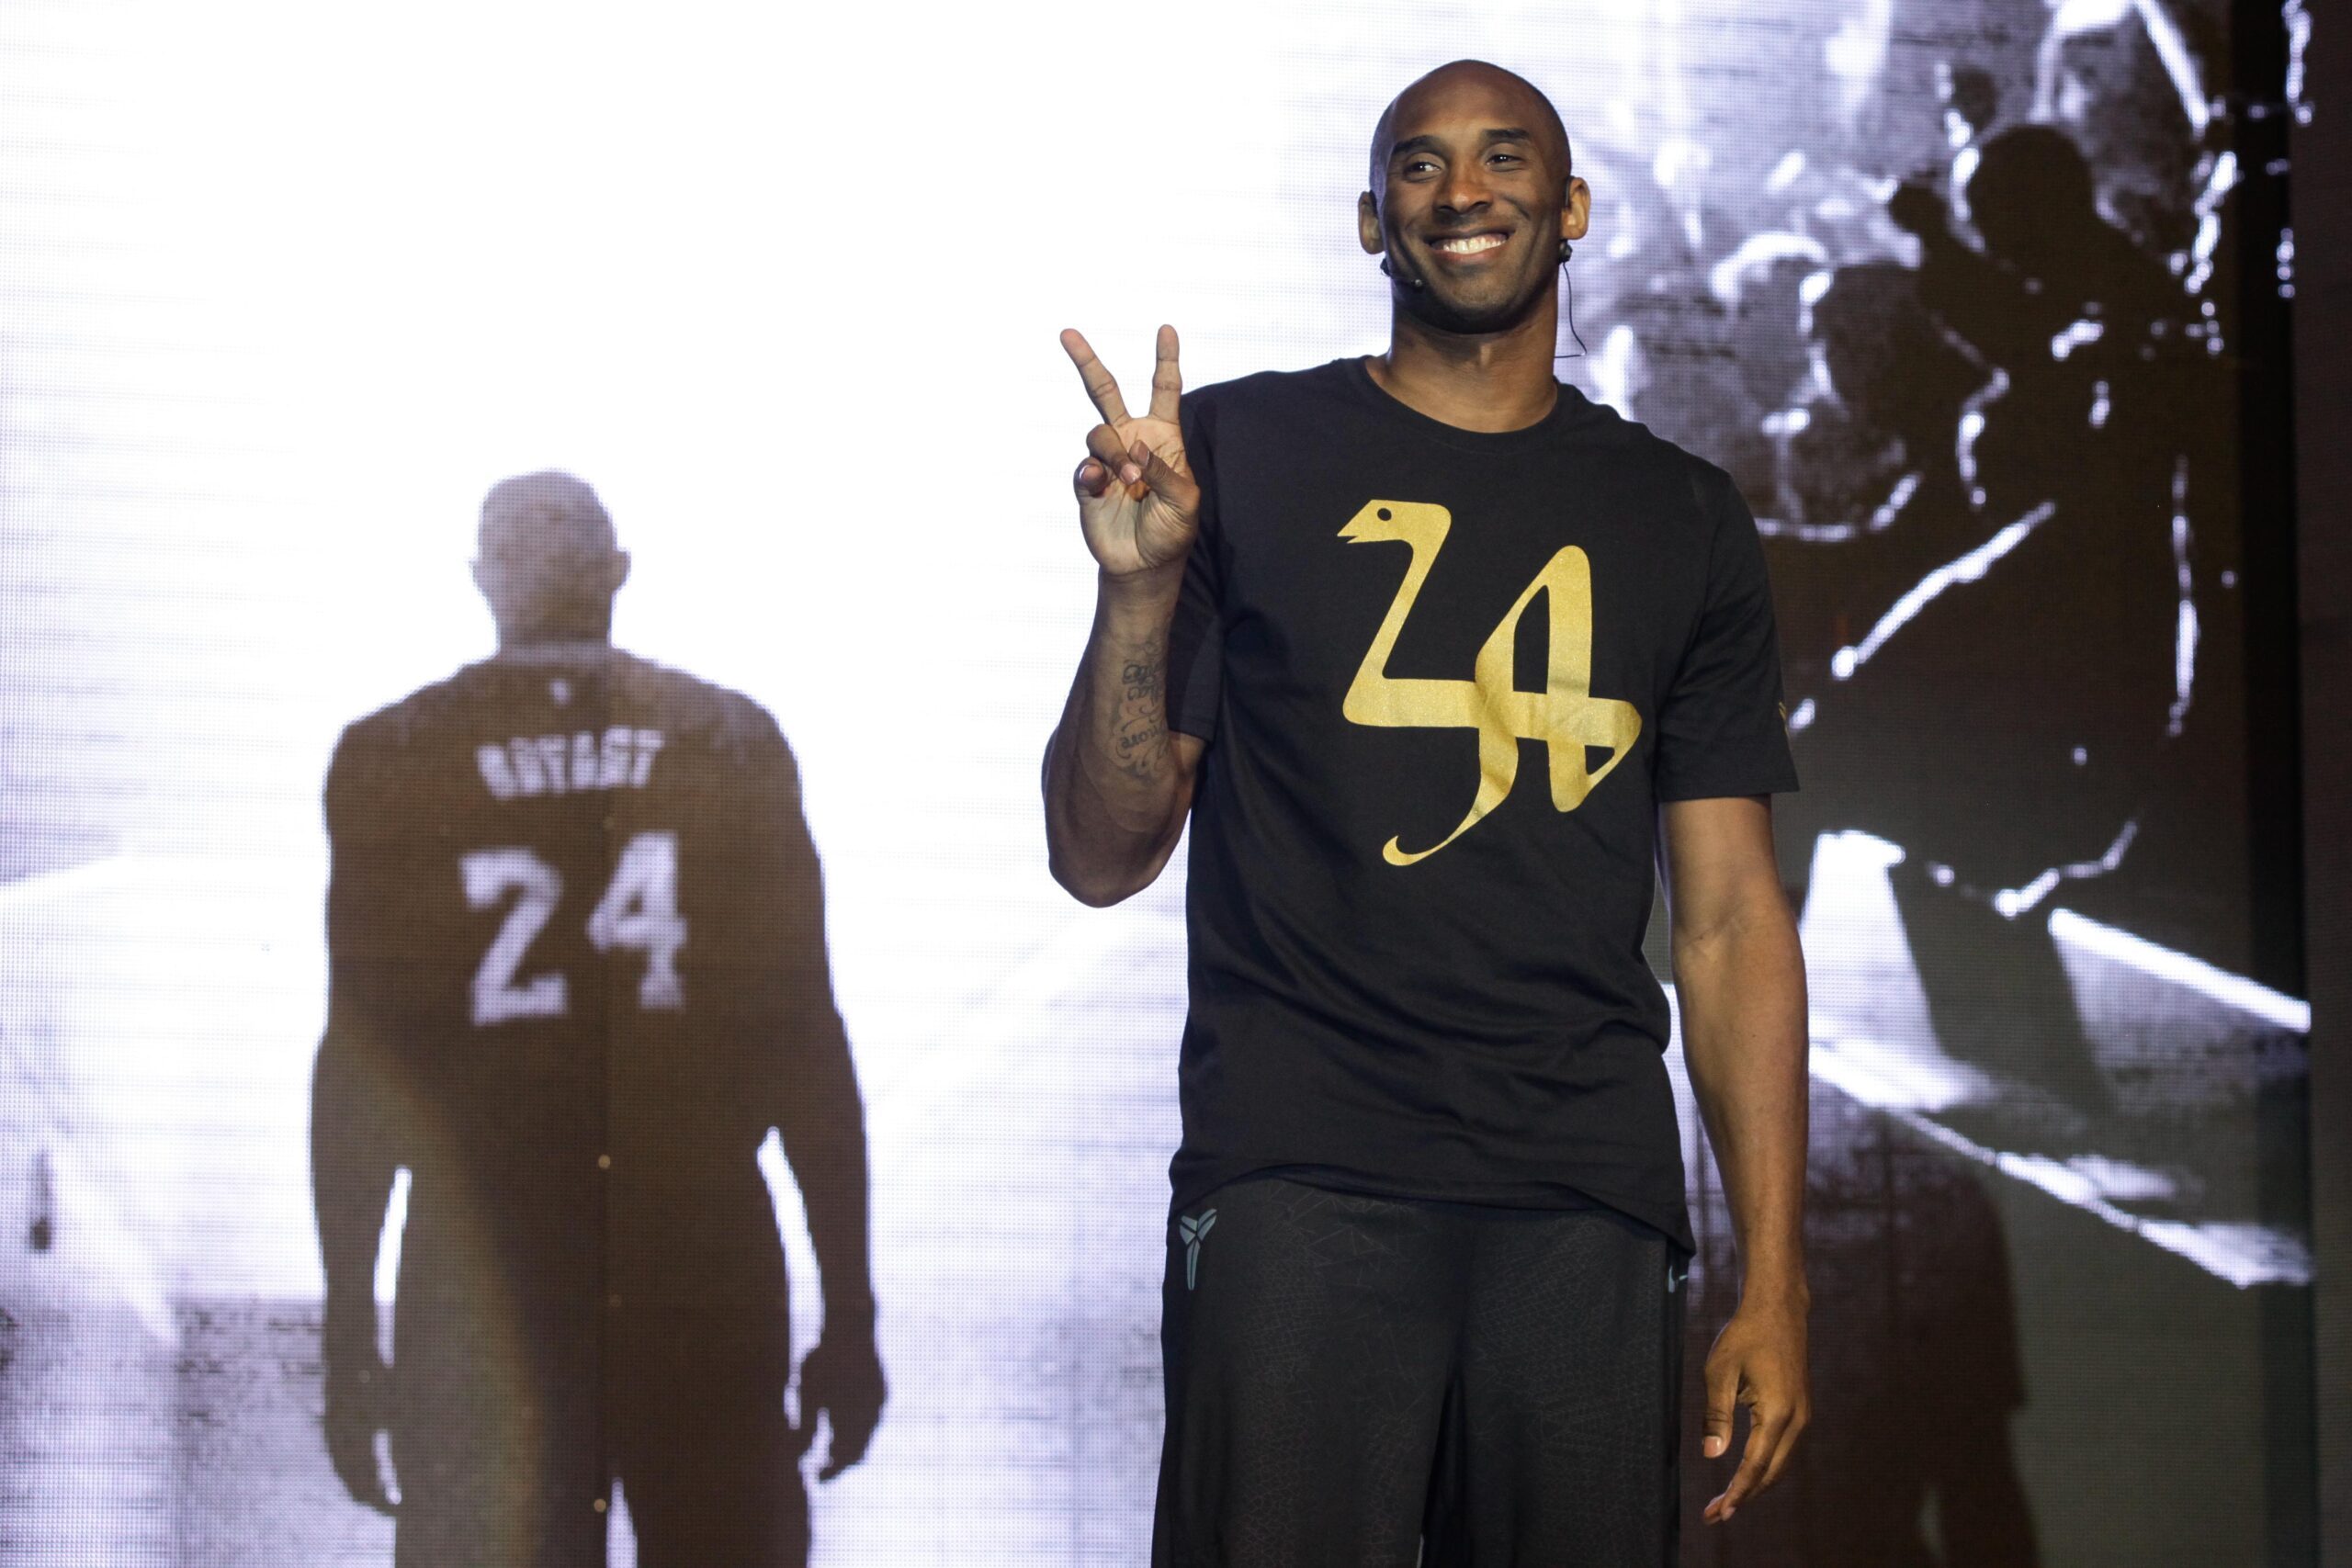 IN PHOTOS: Kobe Bryant visits Manila again